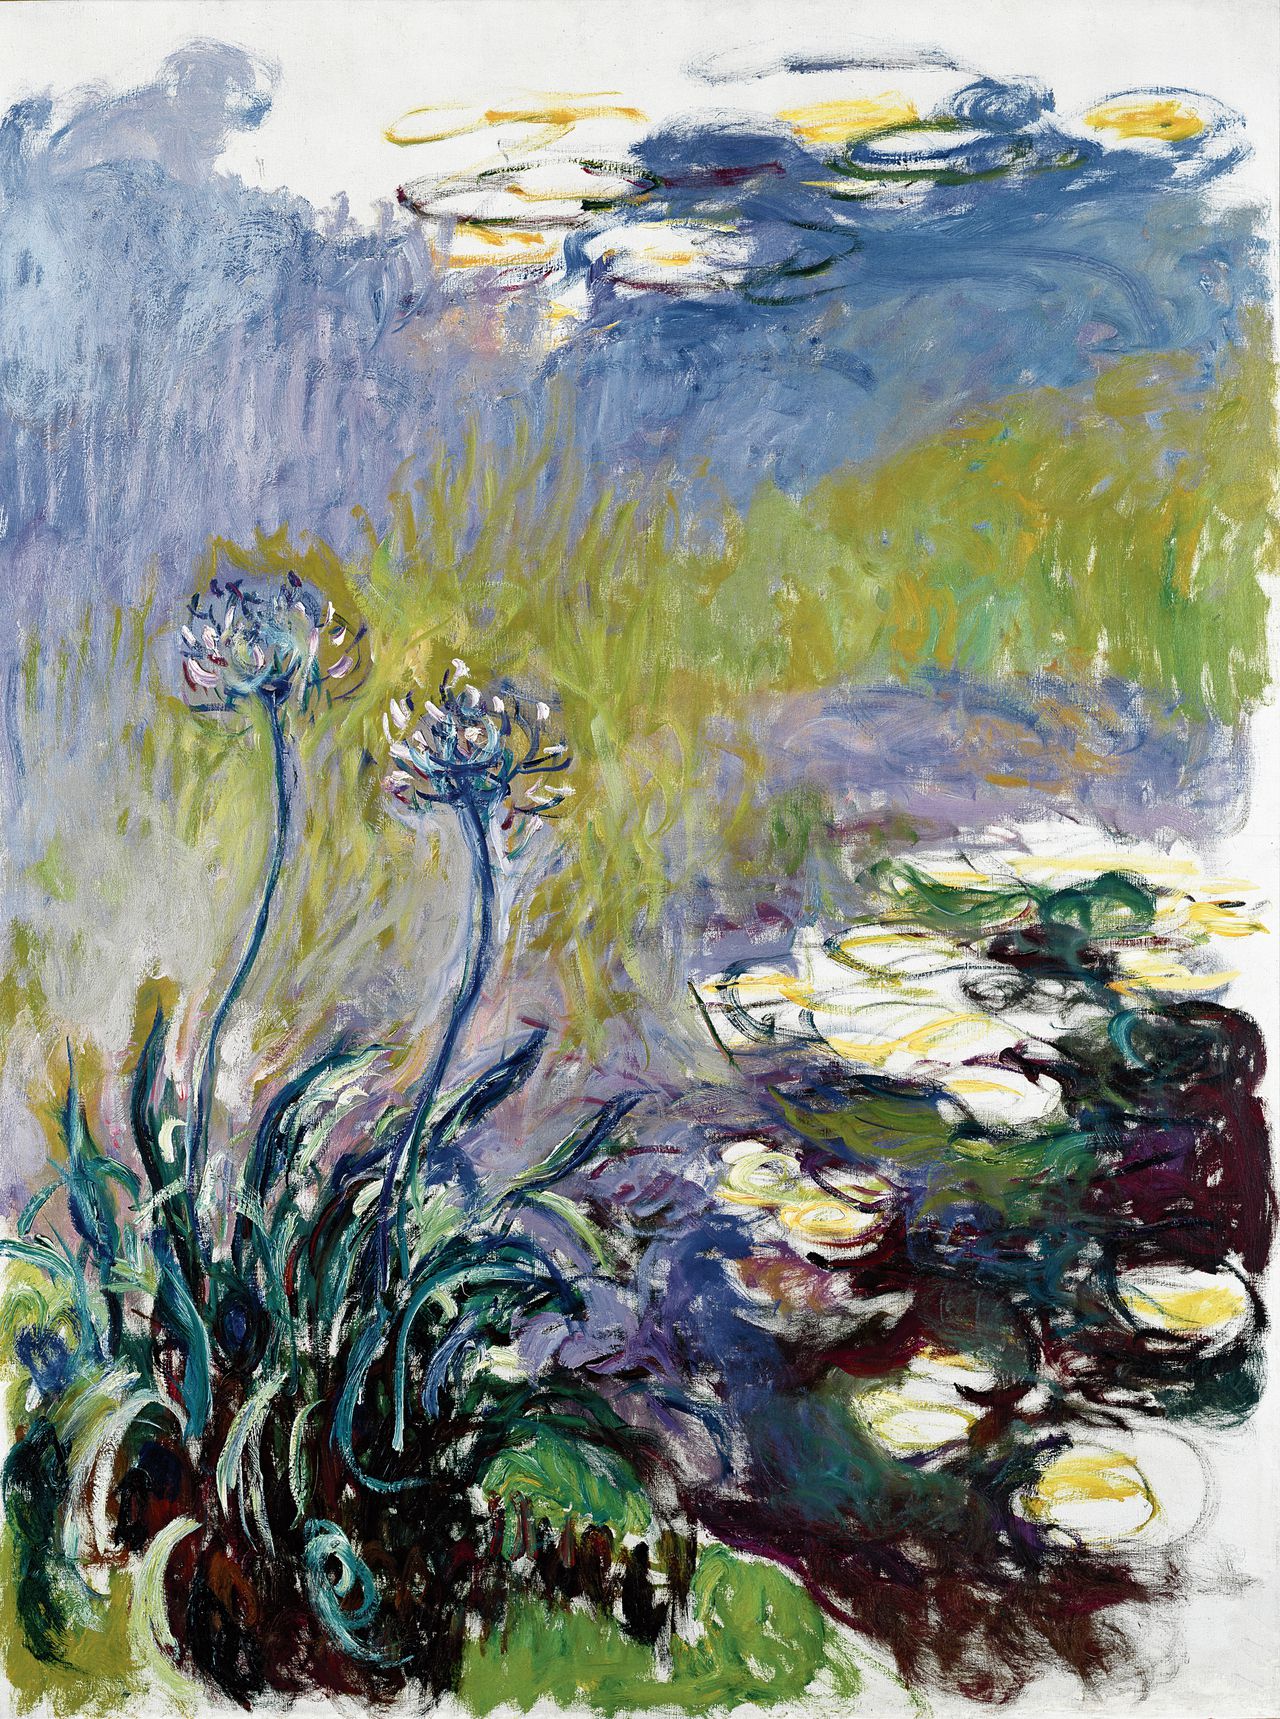 Joan Mitchell & Claude Monet: zoek de verschillen 